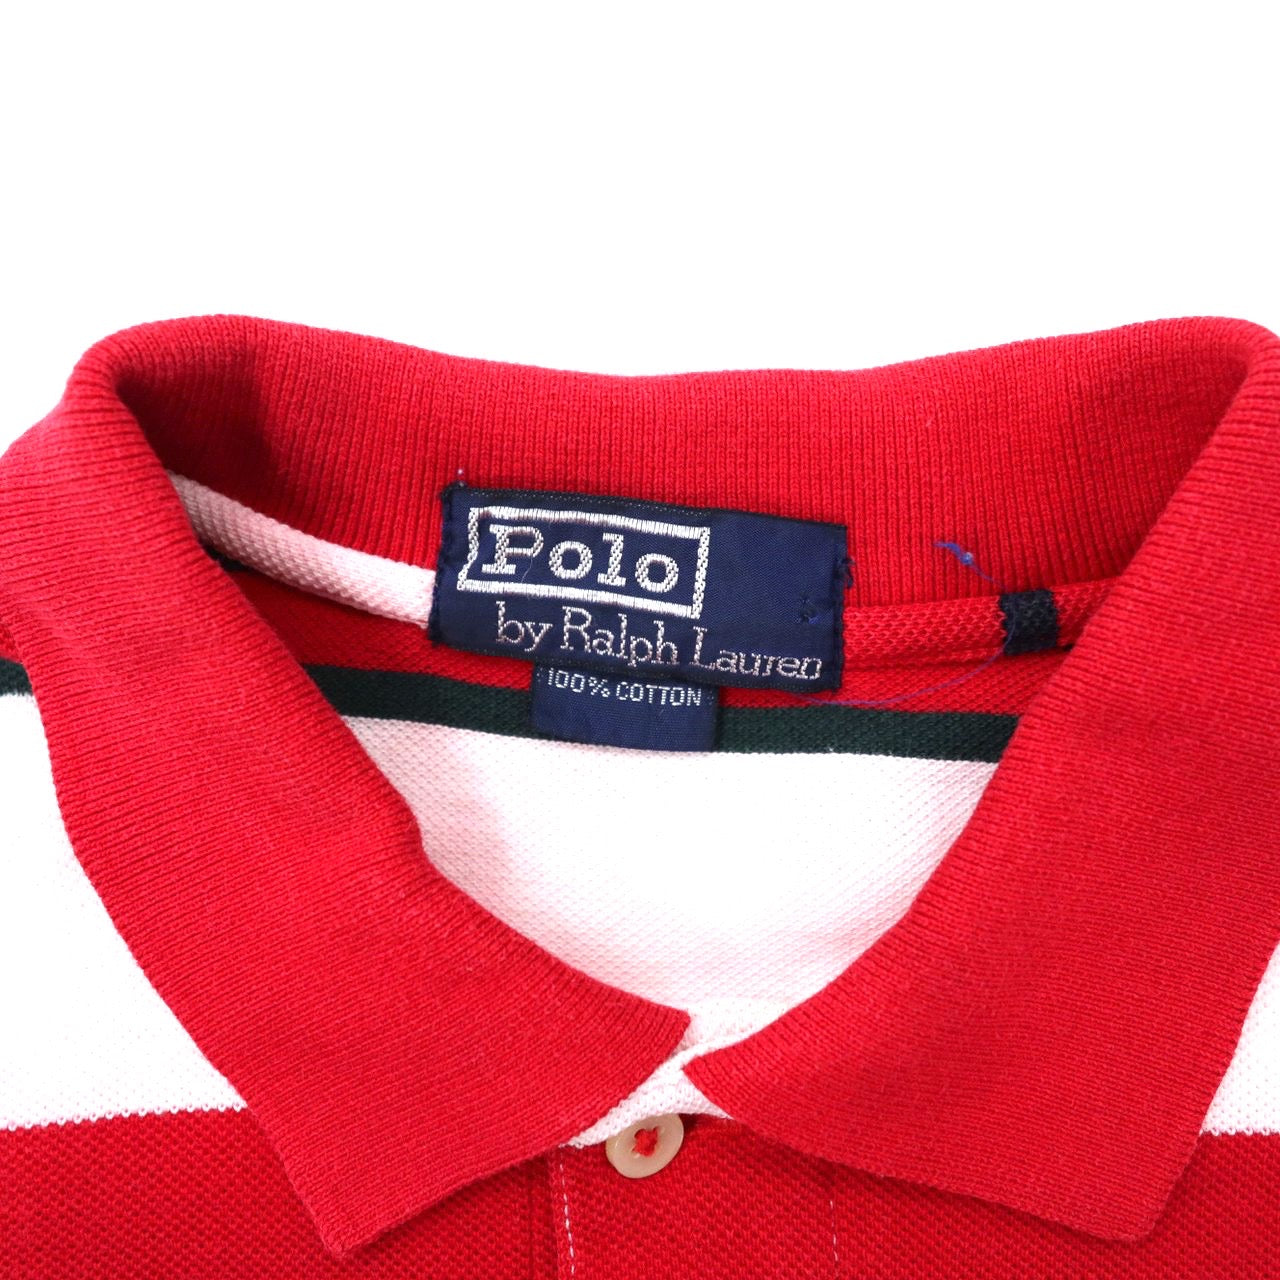 Polo by Ralph Lauren ボーダーポロシャツ L レッド コットン スモールポニー刺繍